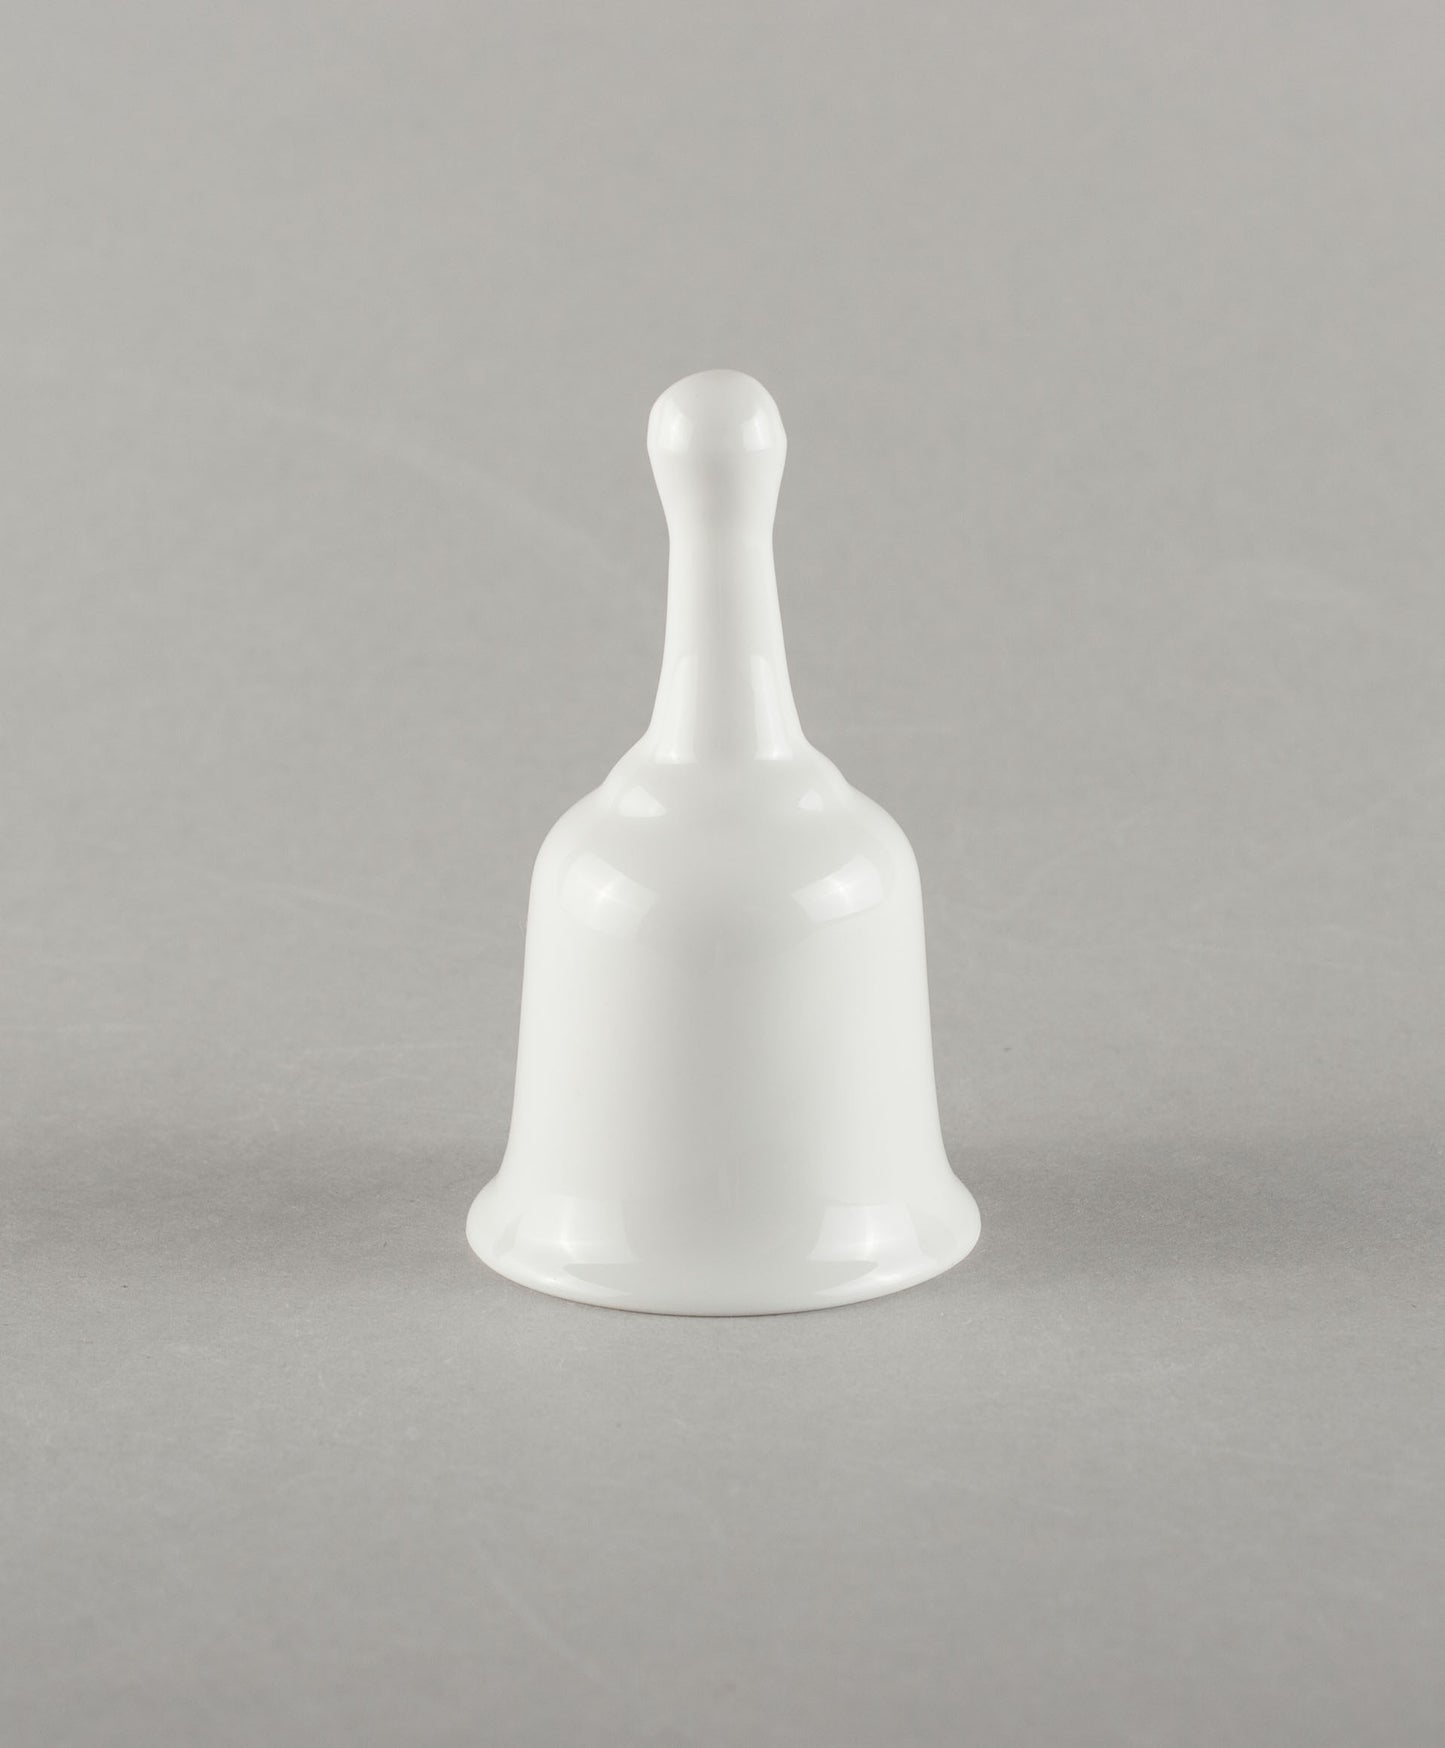 Porcelain Bell Small (white)